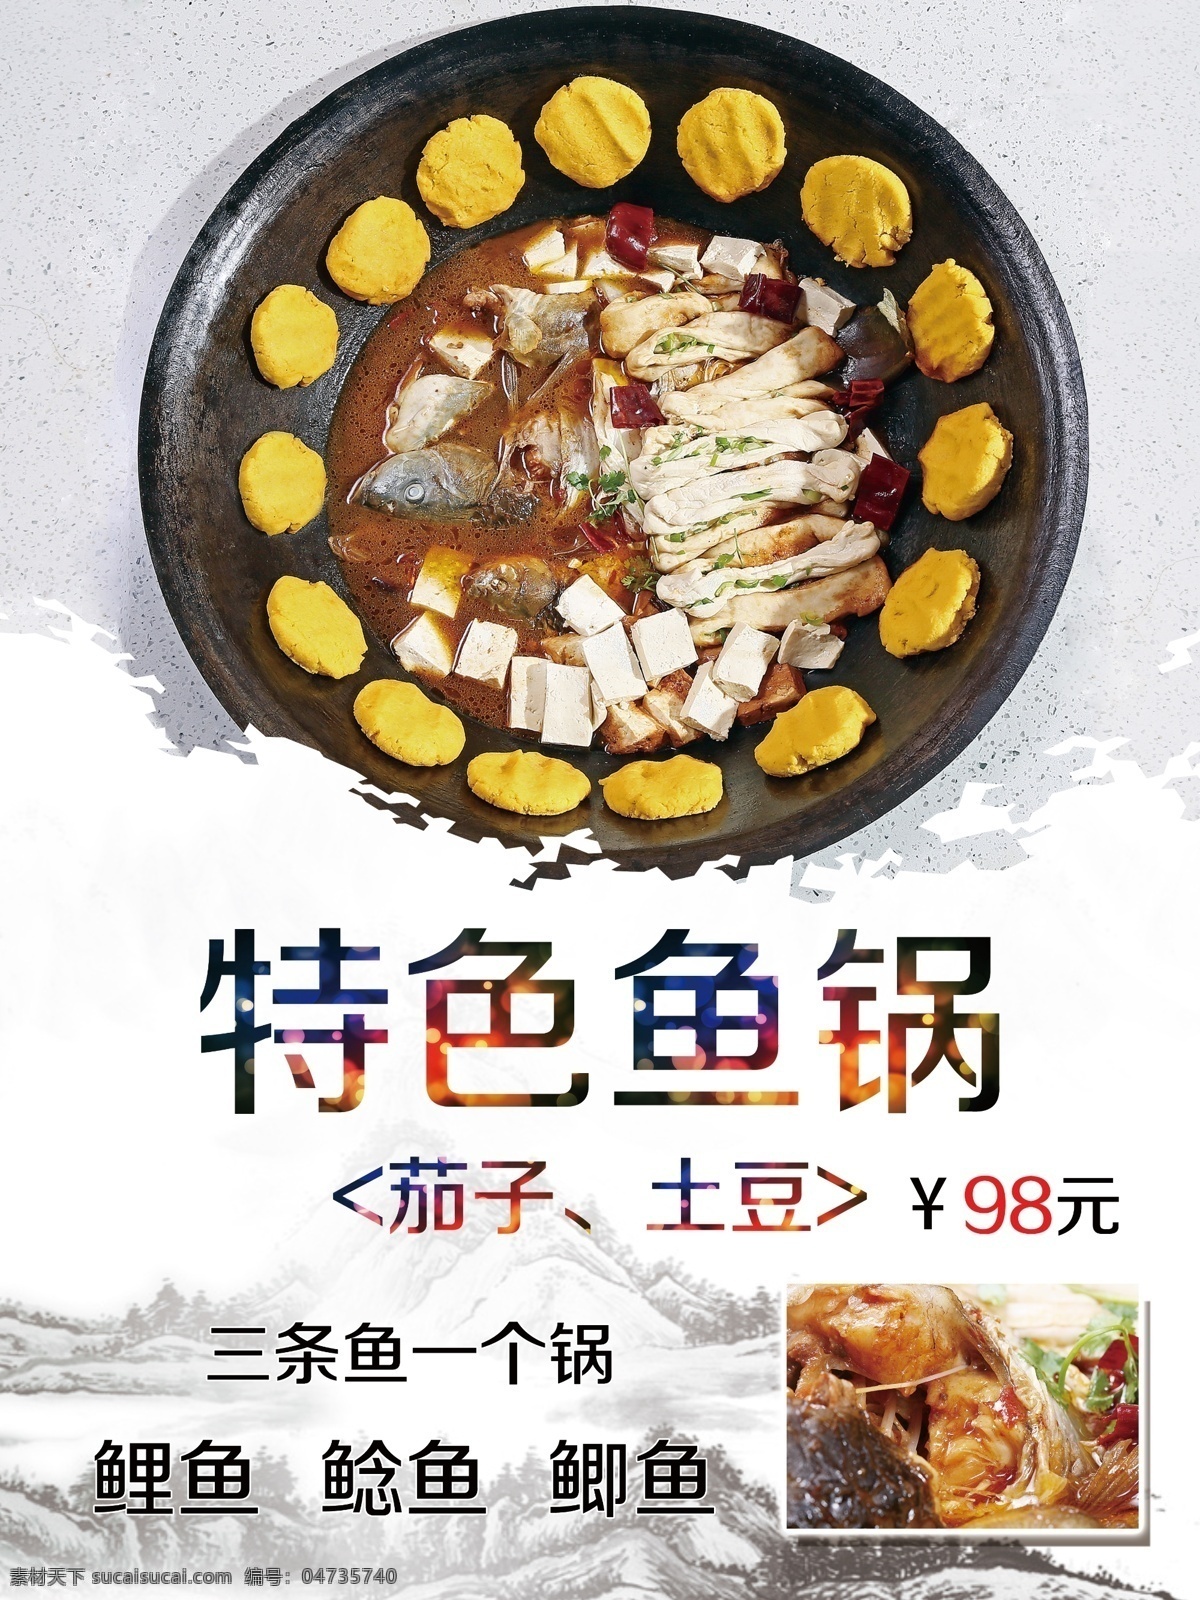 特色鱼锅 鱼锅海报 鱼锅素材 美食海报 鱼锅饼子 鱼美食